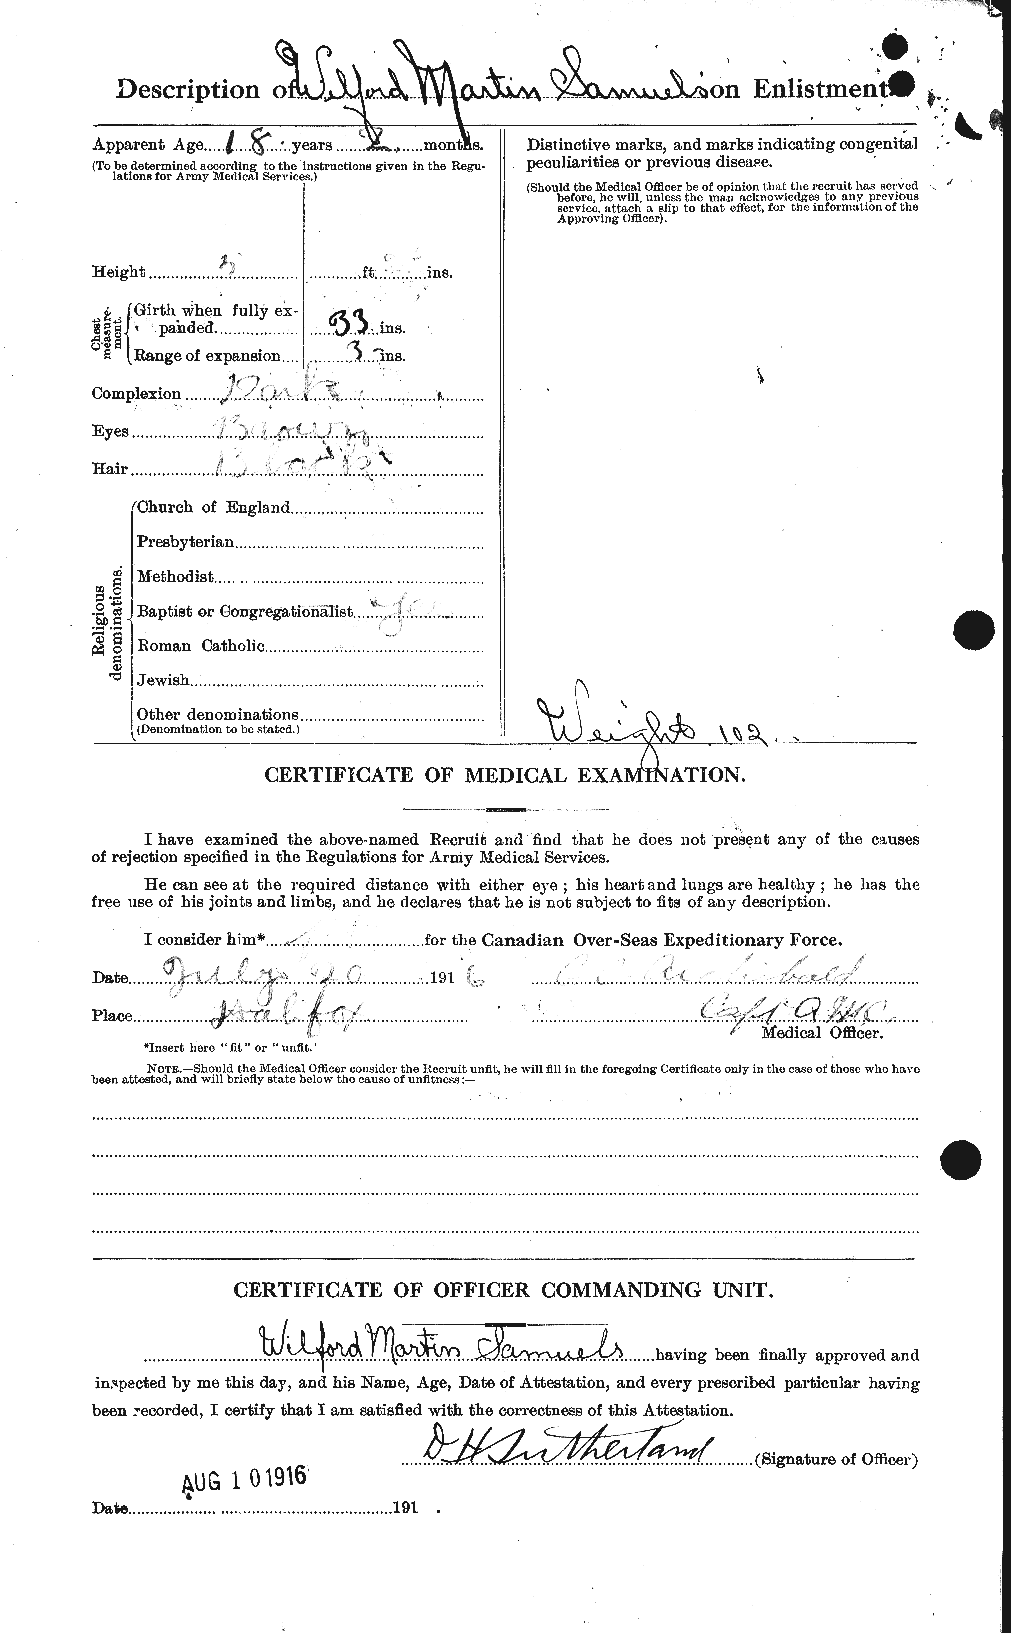 Dossiers du Personnel de la Première Guerre mondiale - CEC 076193b